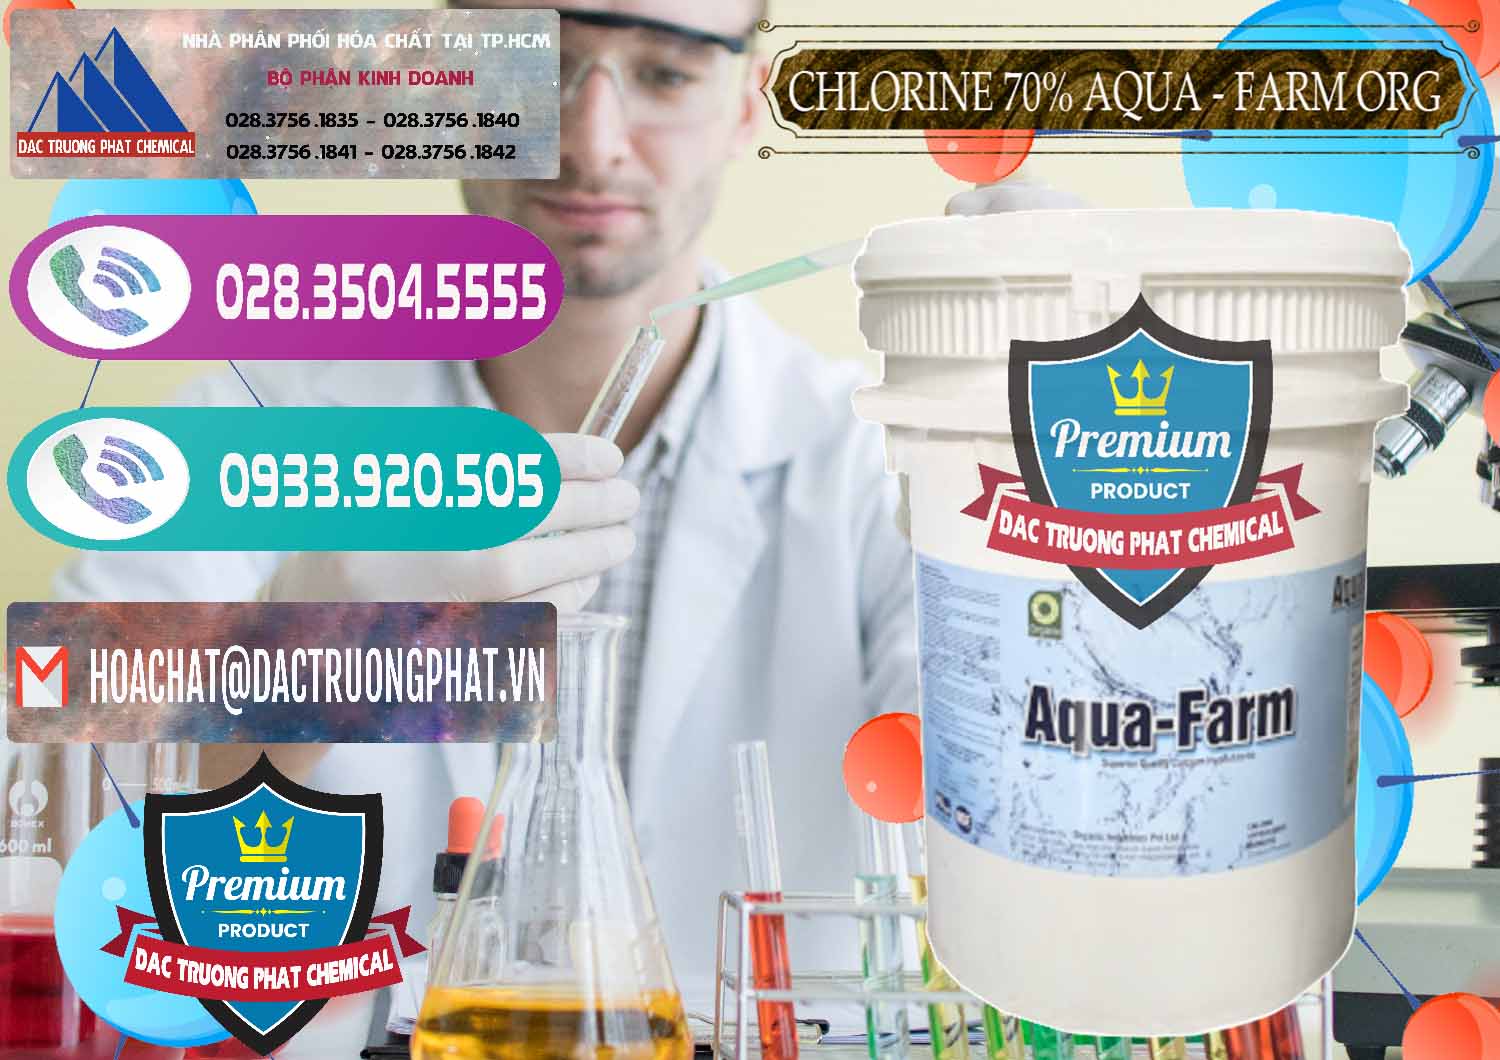 Đơn vị bán - cung ứng Chlorine – Clorin 70% Aqua - Farm ORG Organic Ấn Độ India - 0246 - Công ty chuyên phân phối _ bán hóa chất tại TP.HCM - hoachatxulynuoc.com